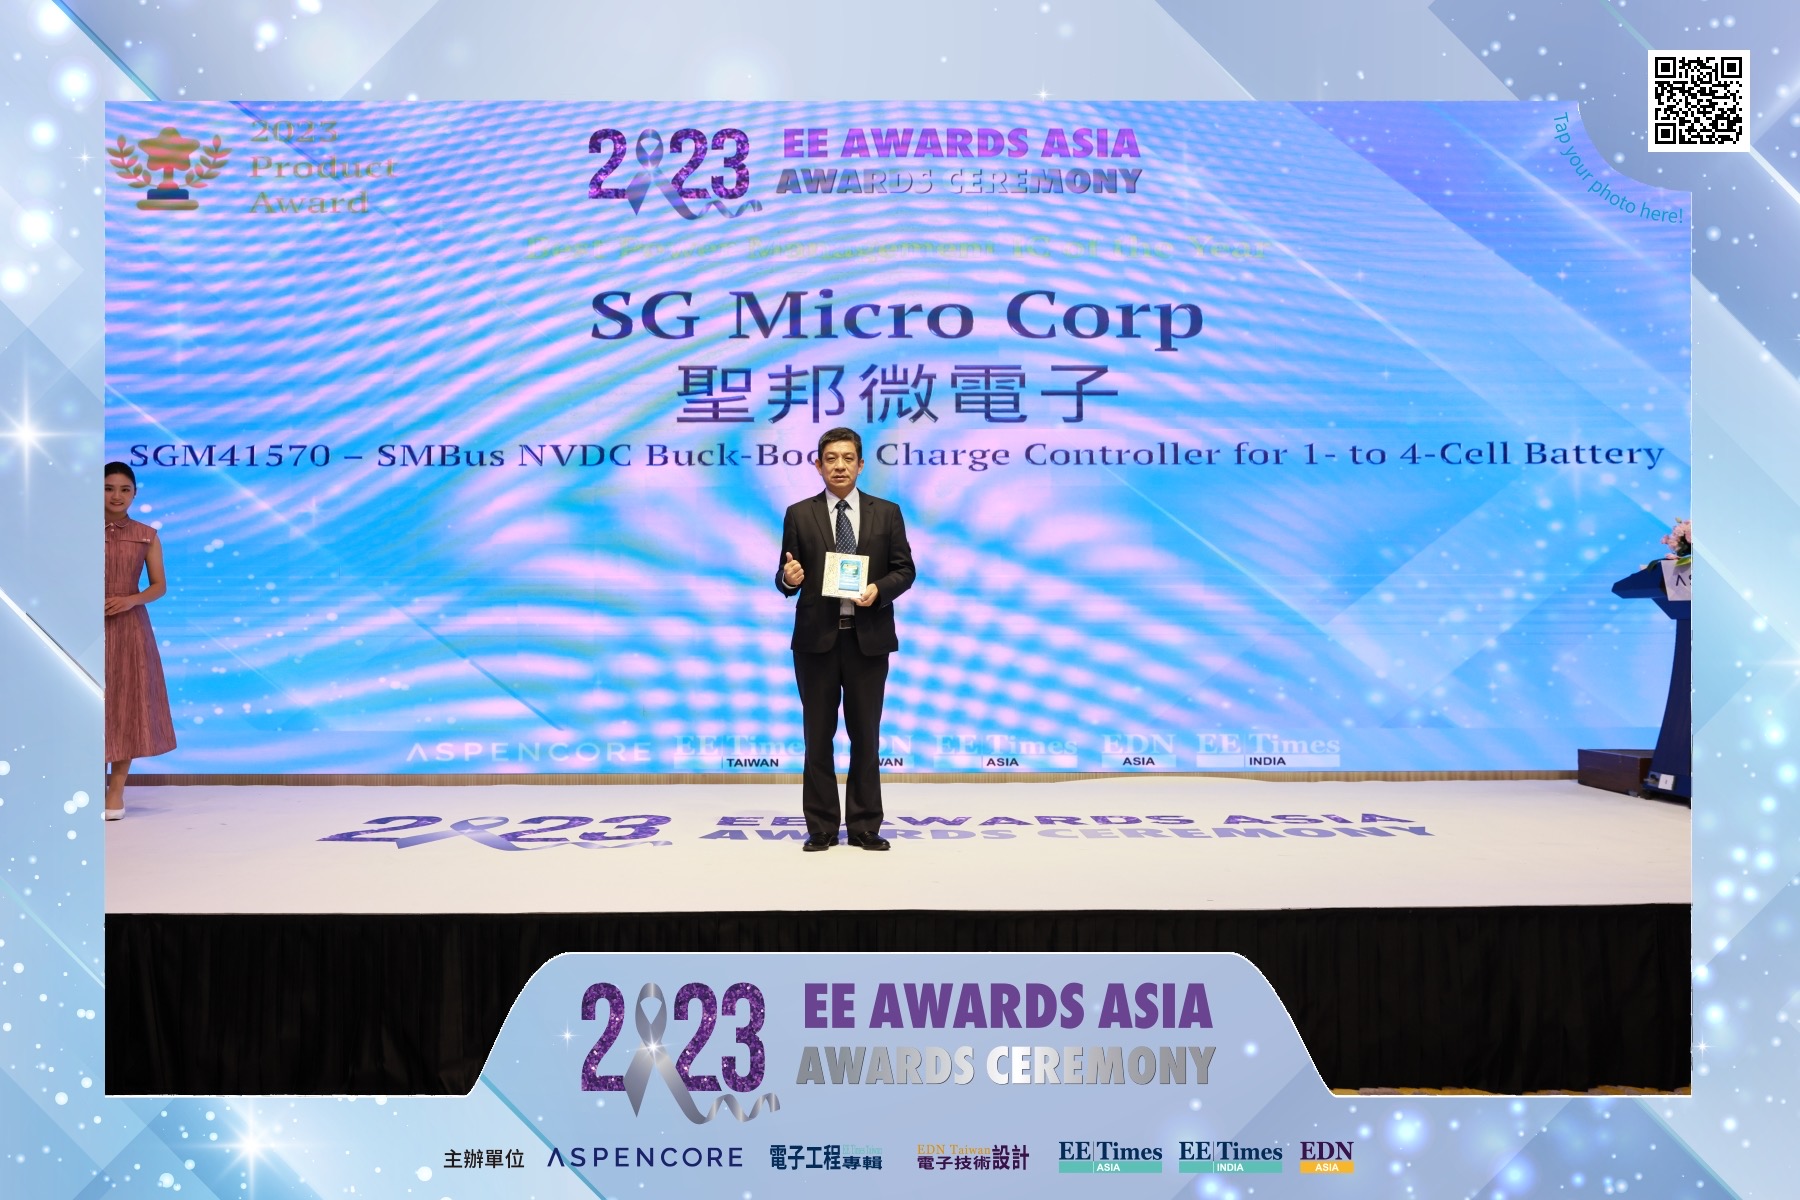 SGM41570 荣获 2023 亚洲金选奖“年度最佳电源管理芯片”